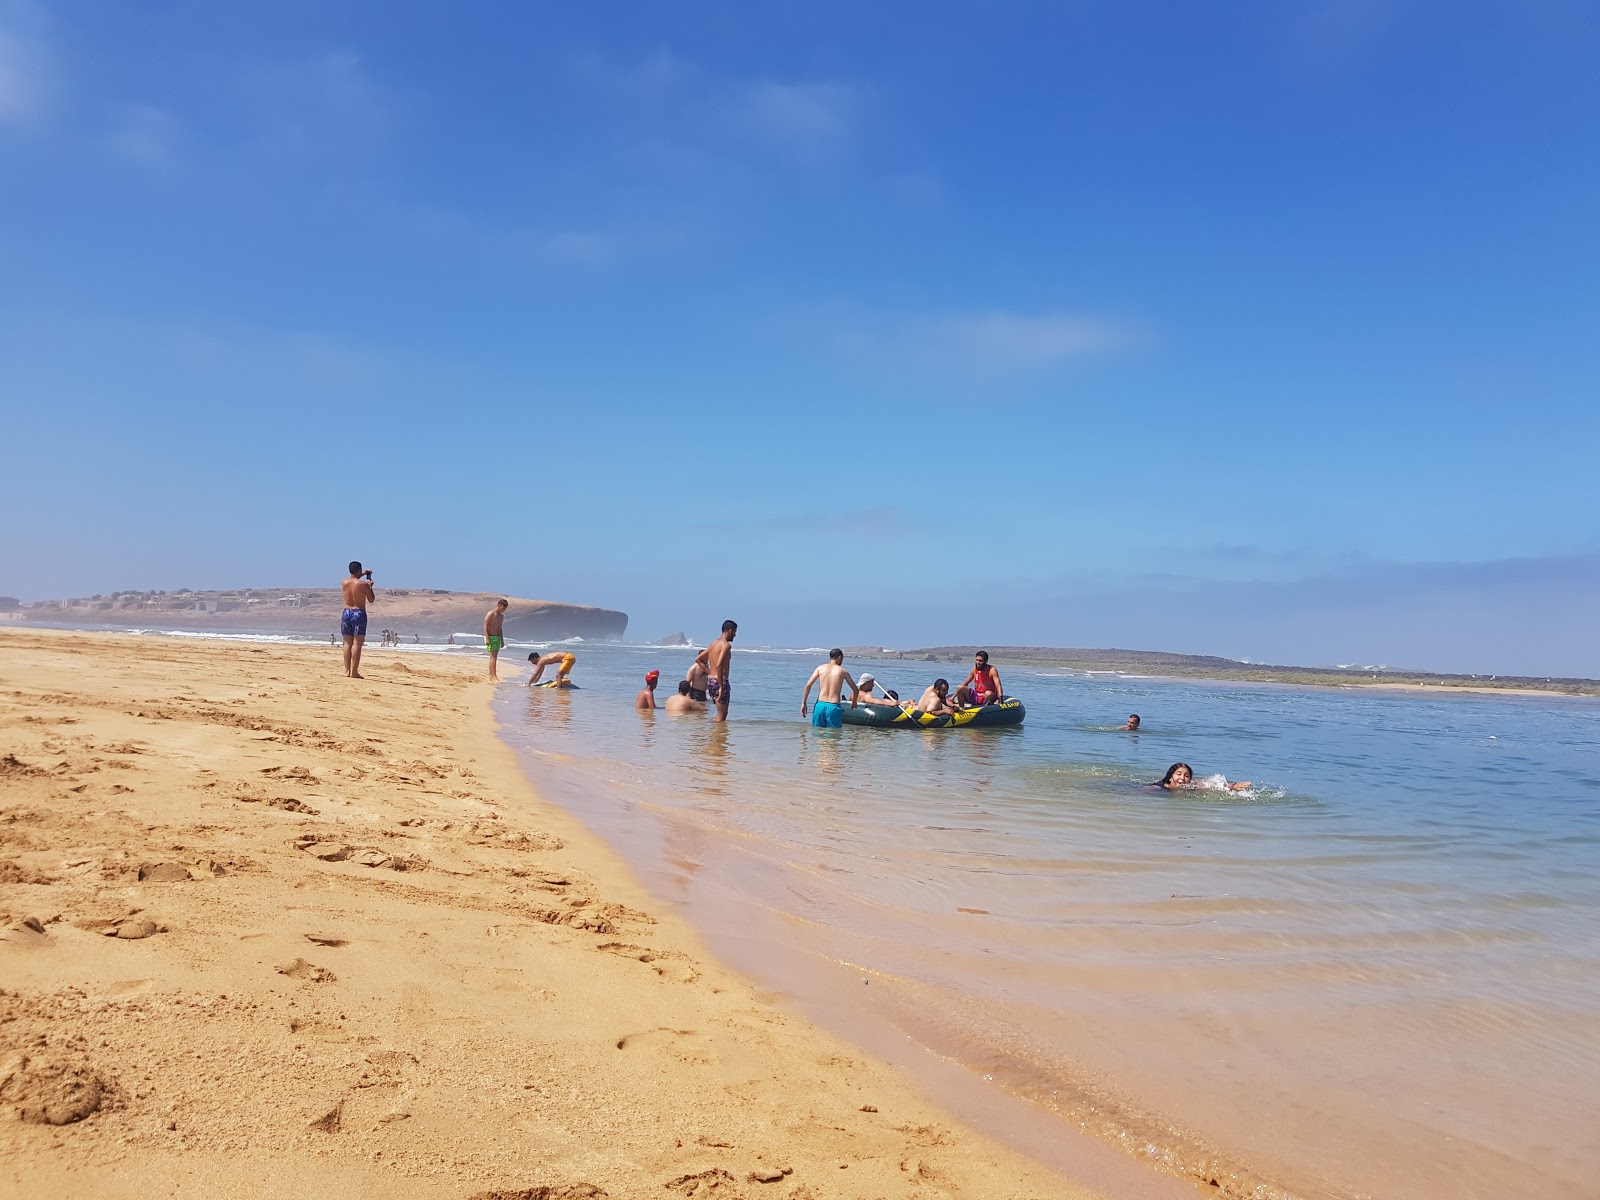 Sidi Belkheir Beach shaty sydy balkhyr'in fotoğrafı küçük koylar ile birlikte